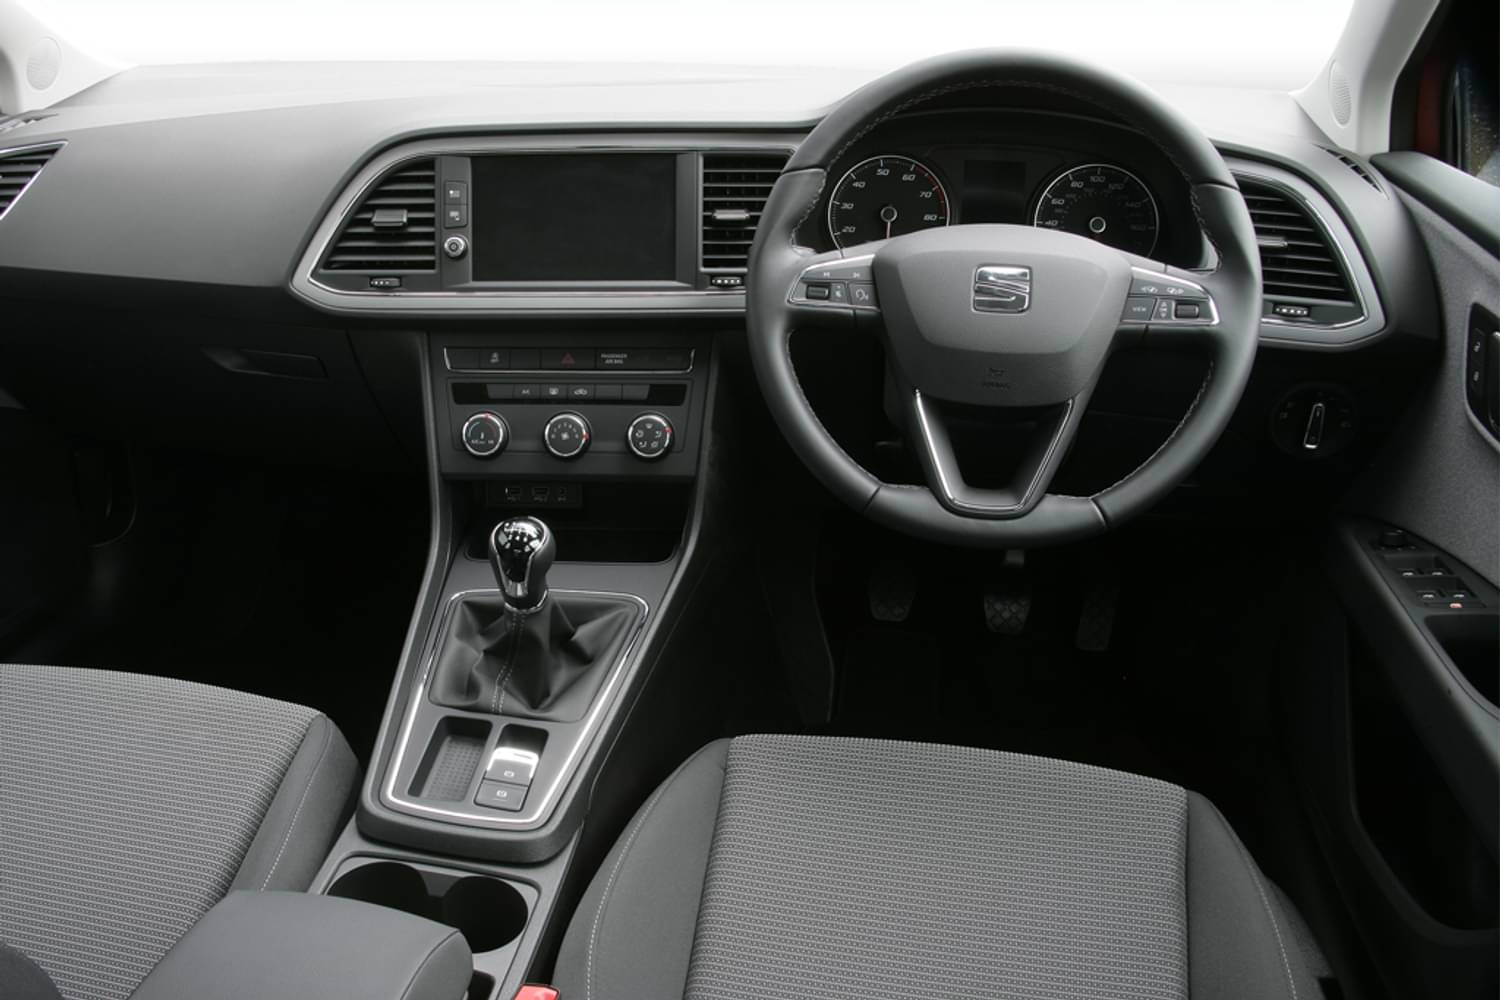 New Seat Leon Hatchback 2 0 Tsi 290 Ps Cupra Lux Ez 5 Door Dsg 2018 For Sale